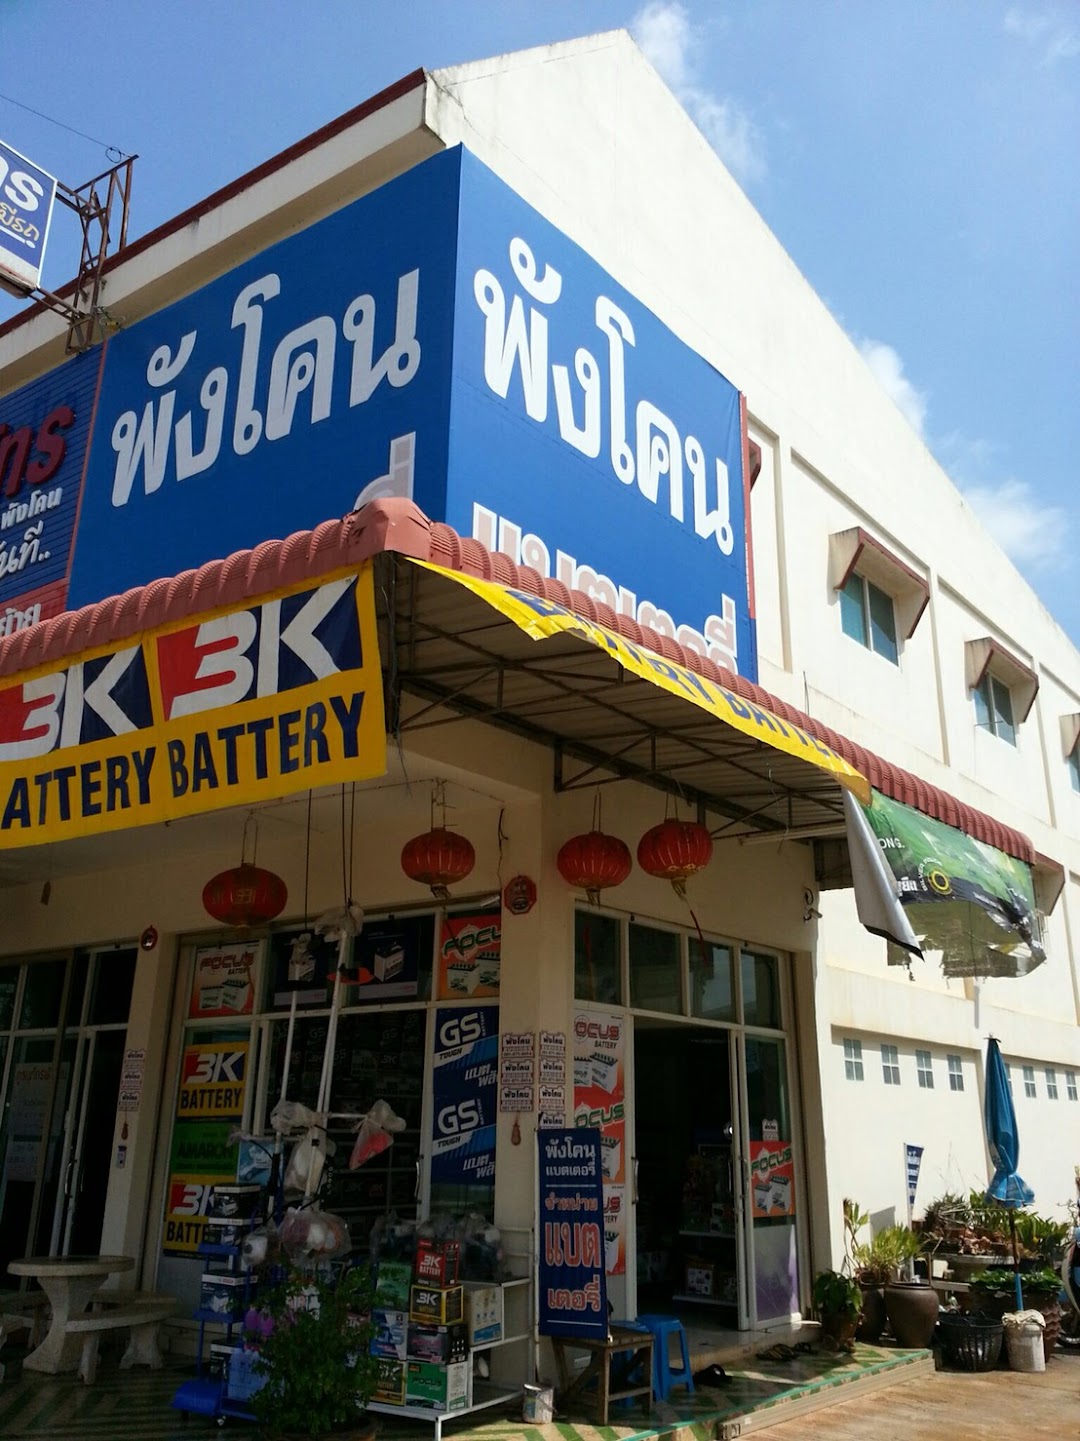 ร้านพังโคนแบตเตอรี่ - Phang Khon Battery